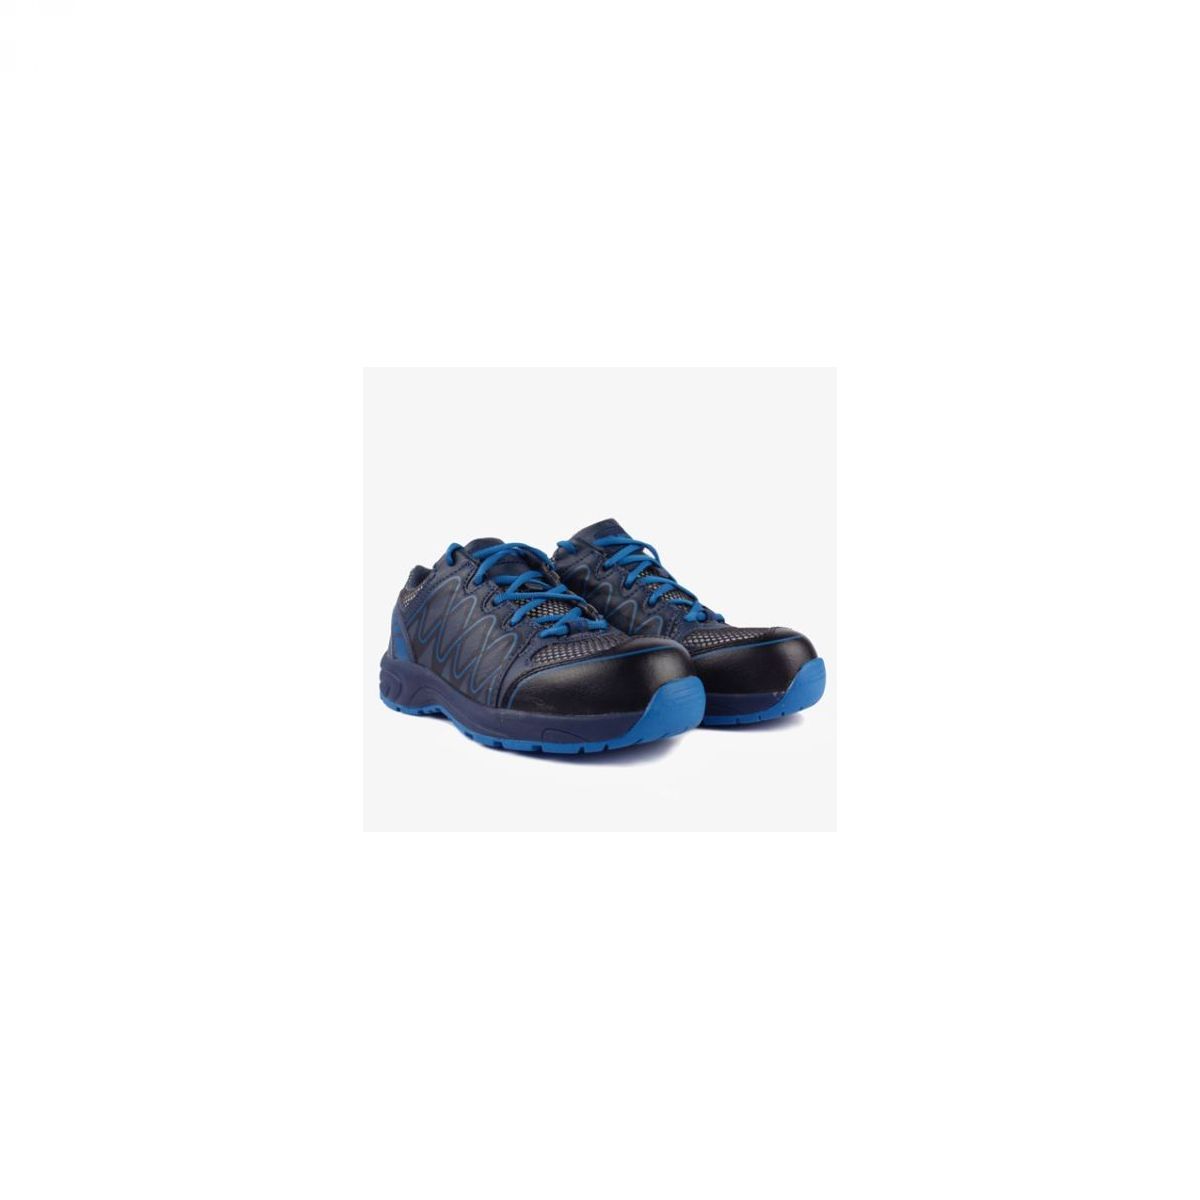 Zaštitna cipela VISPER S1 plavo - crna